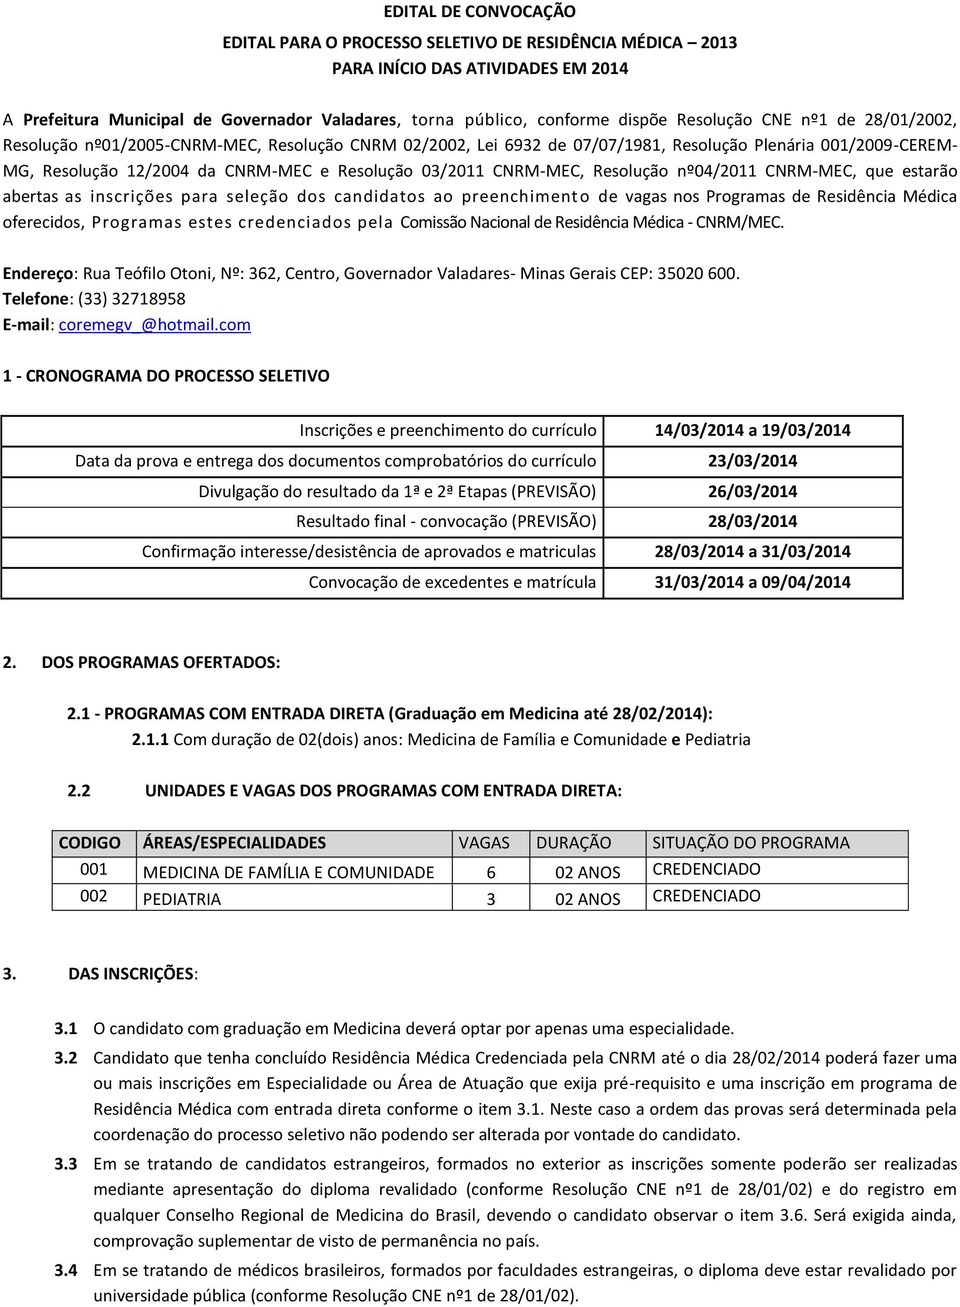 CNRM-MEC, Resolução nº04/2011 CNRM-MEC, que estarão abertas as inscrições para seleção dos candidatos ao preenchiment o de vagas nos Programas de Residência Médica oferecidos, Programas estes